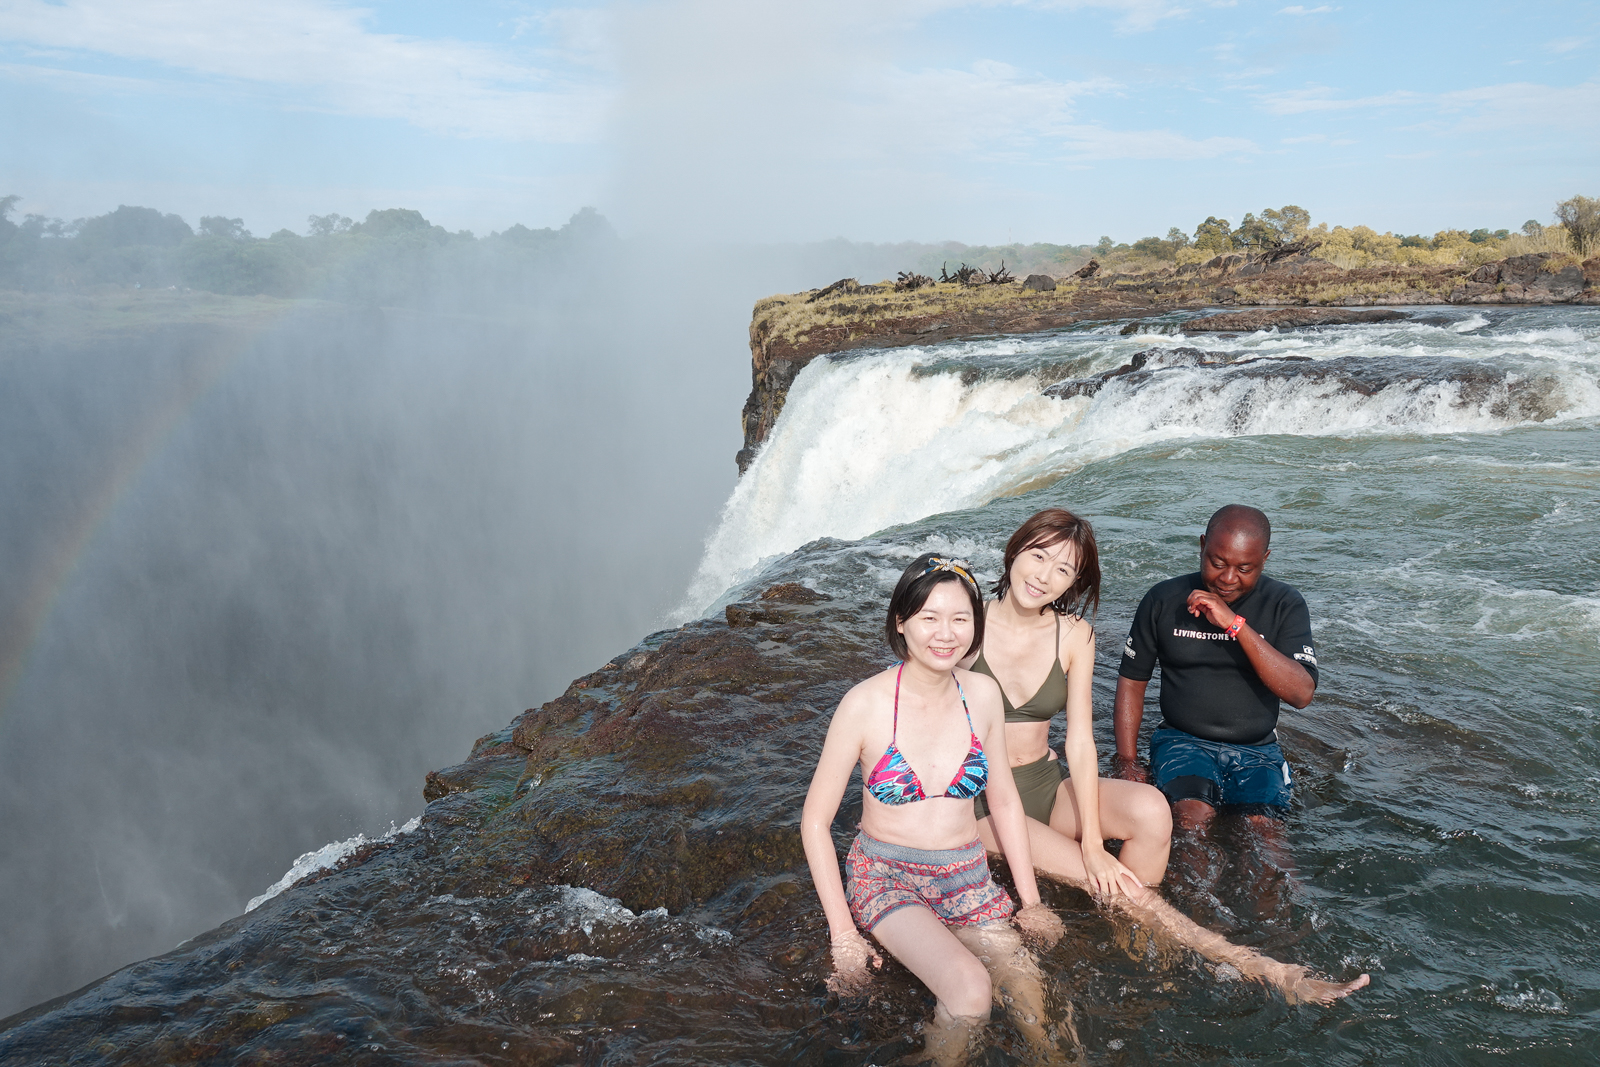 贊比亞魔鬼池 Devil's Pool 最驚險的游泳池 辛巴威維多利雅瀑布之旅